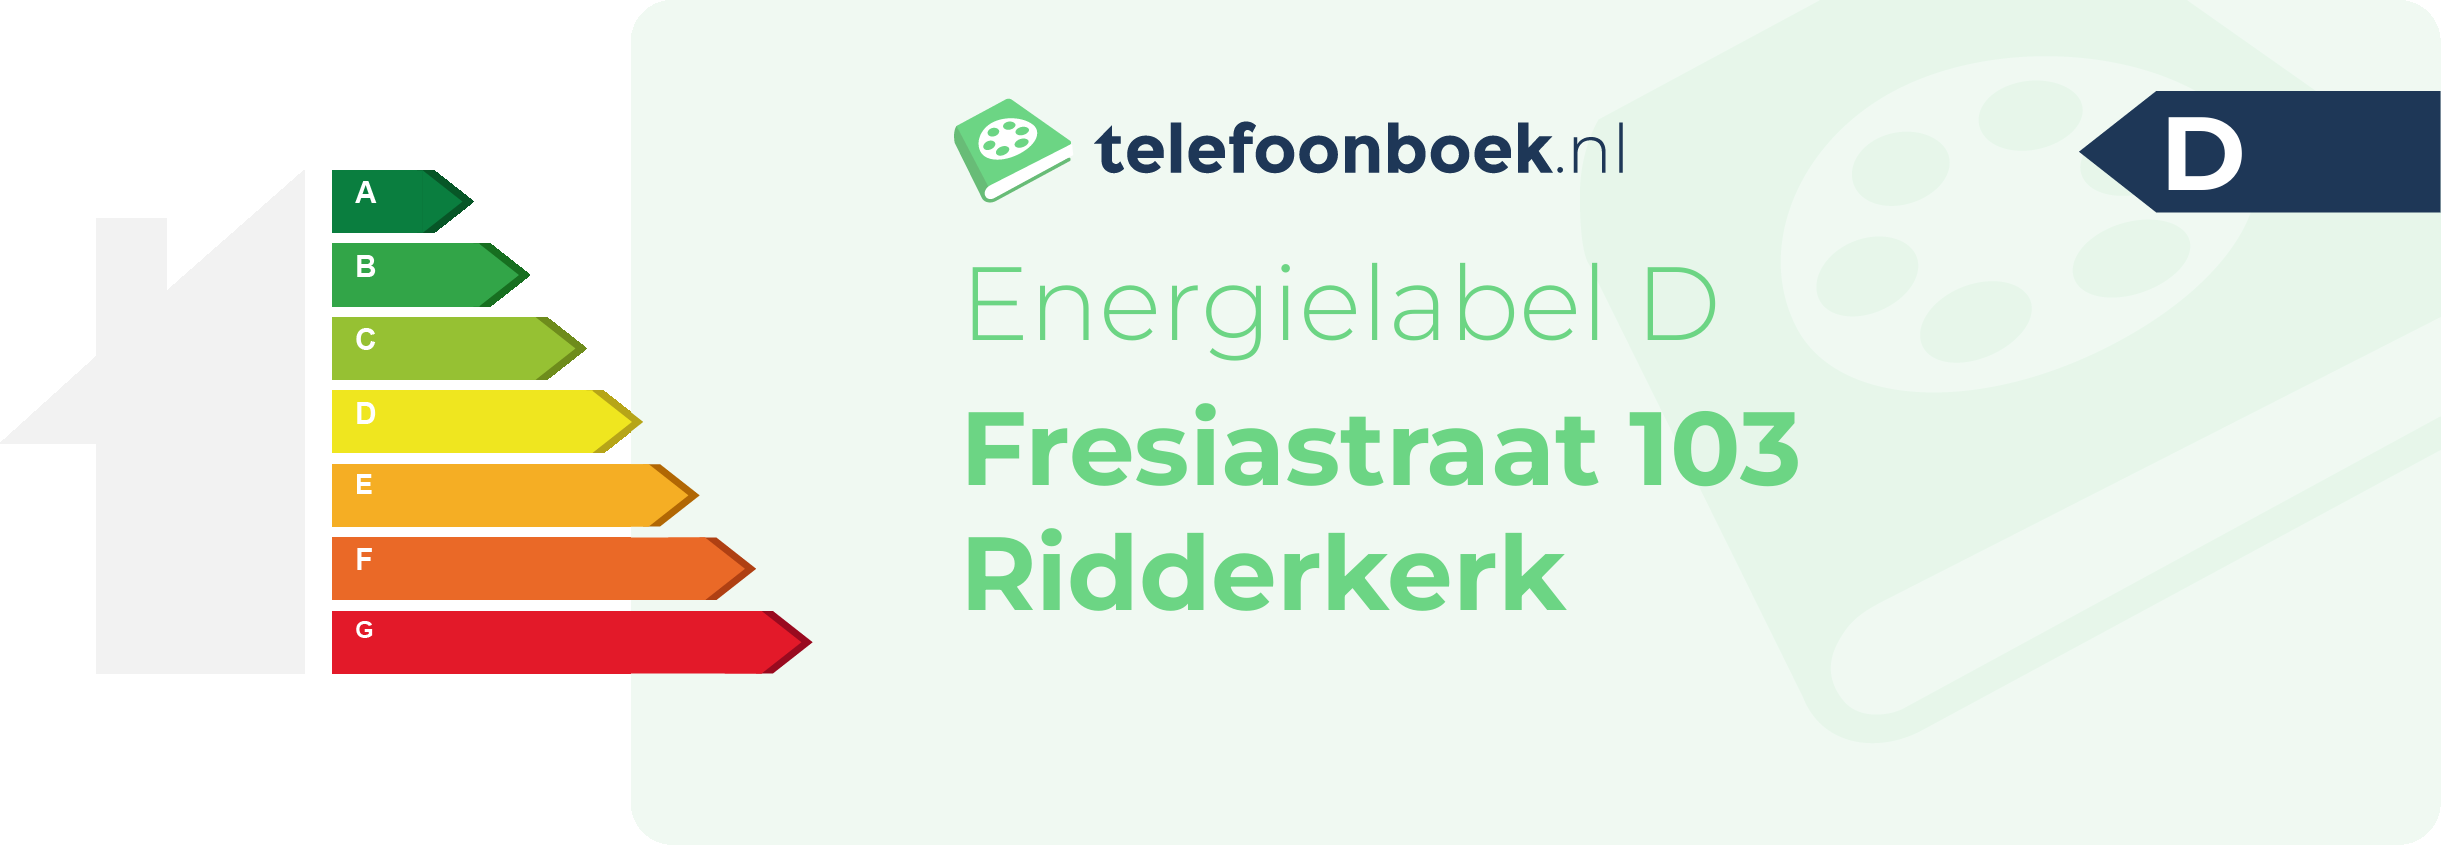 Energielabel Fresiastraat 103 Ridderkerk